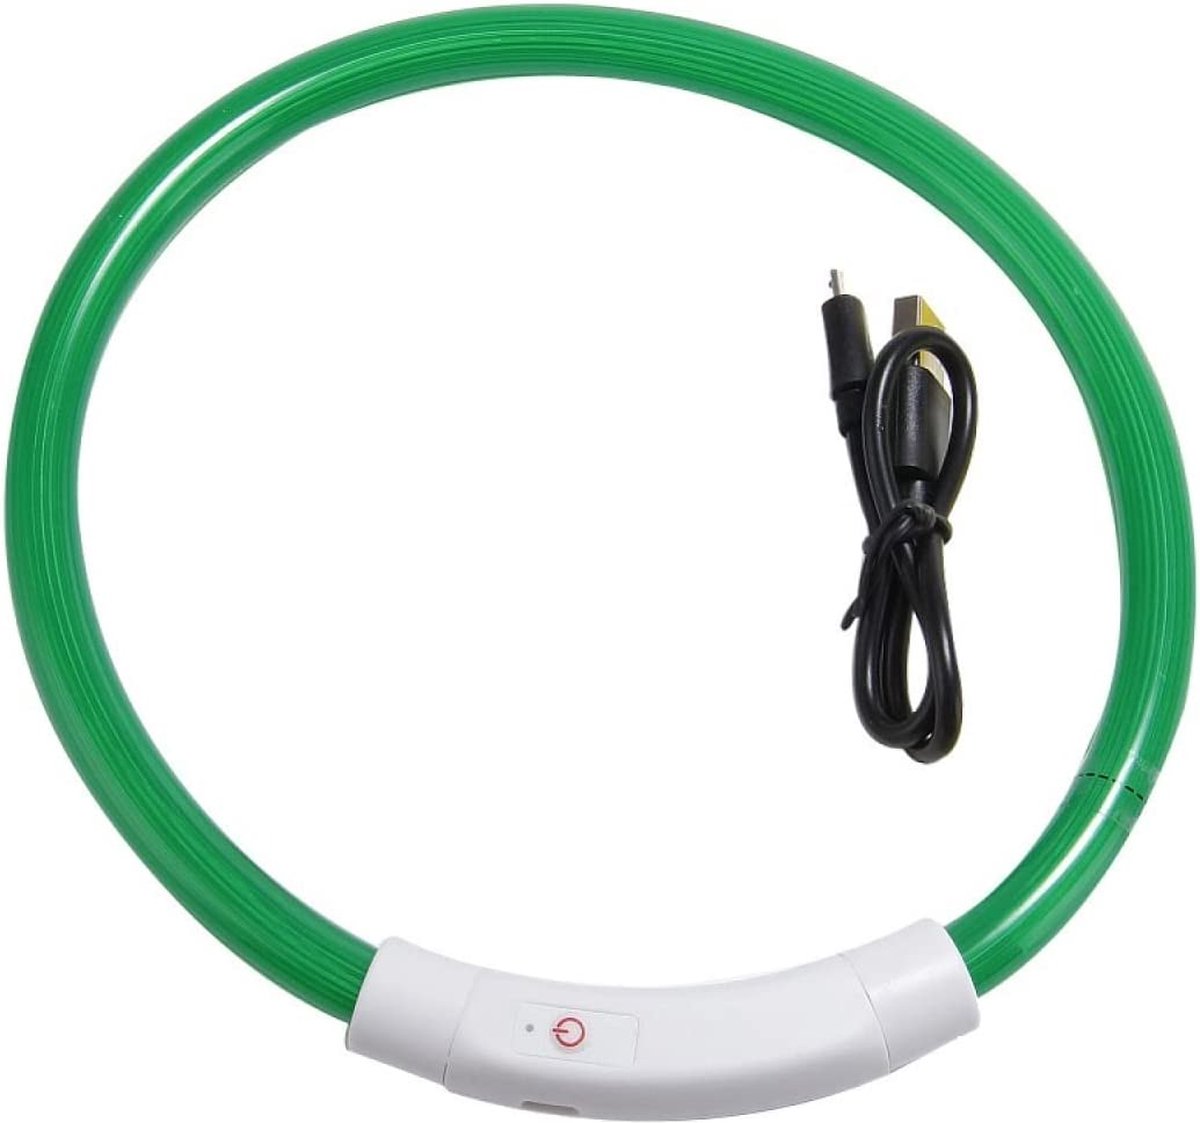 Lichtgevende Halsband Hond - USB Oplaadbaar - Groen - 60 - 70 cm - Honden Lampje Halsband - LED Halsband Hond - Hondenverlichting